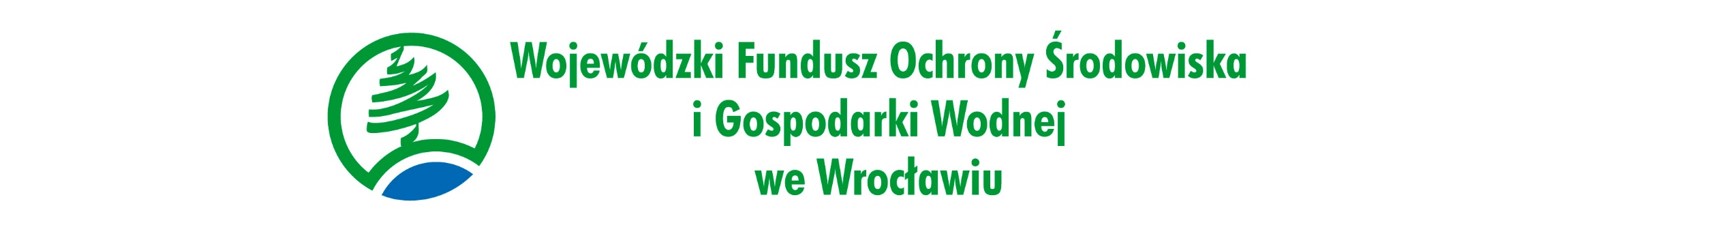 logo wojewódzkiego funduszu ochrony środowiska